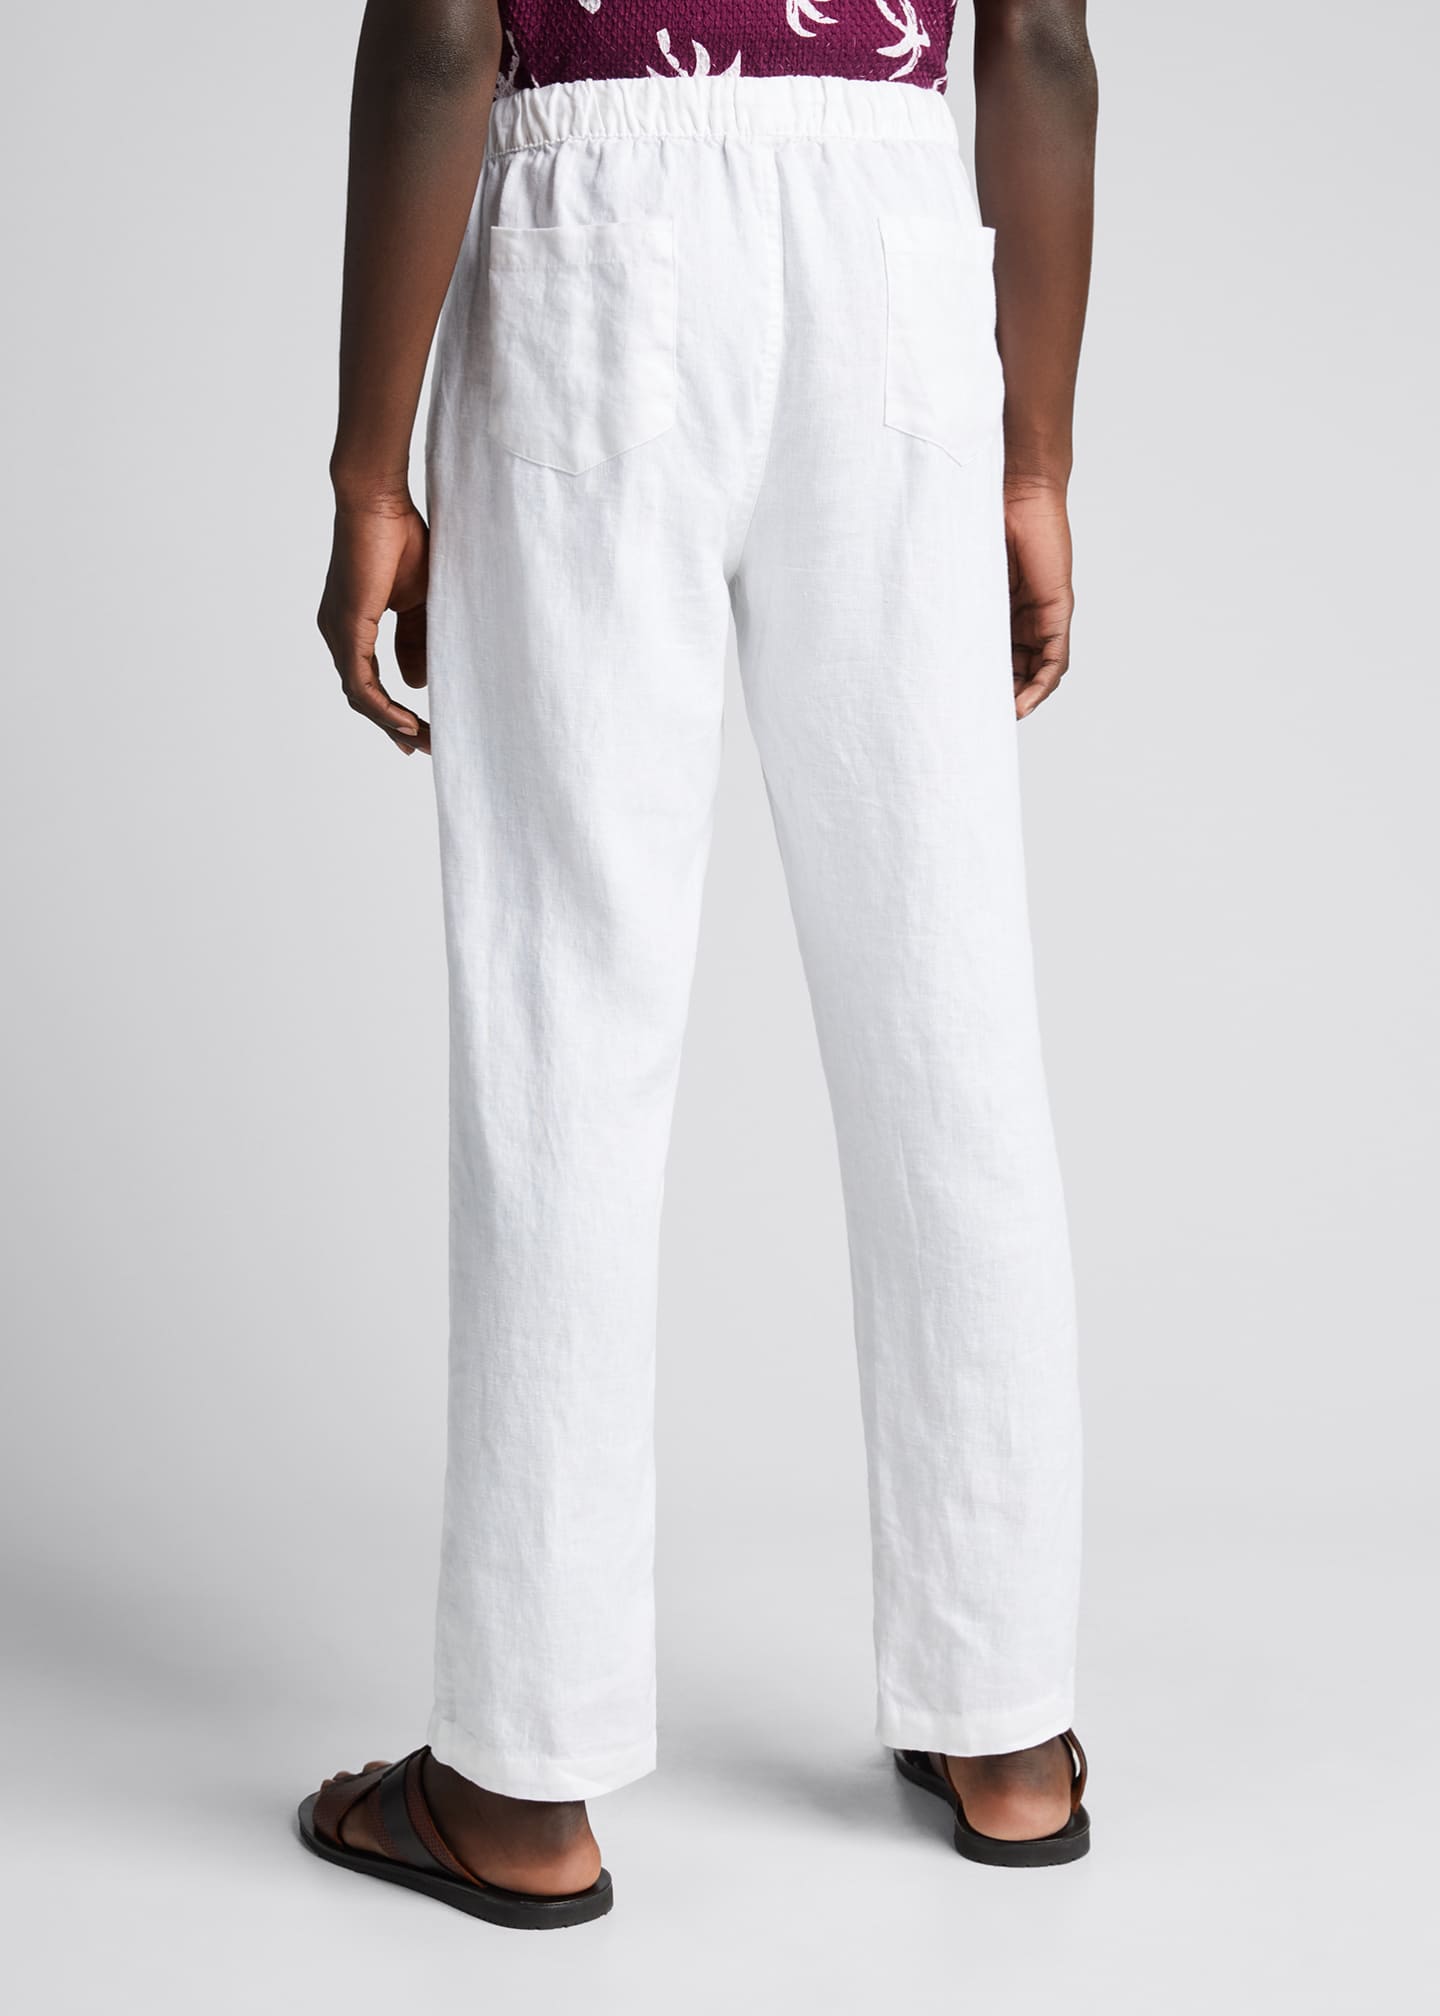 Neiman Marcus Men's Drawstring Linen Pants - Bergdorf Goodman